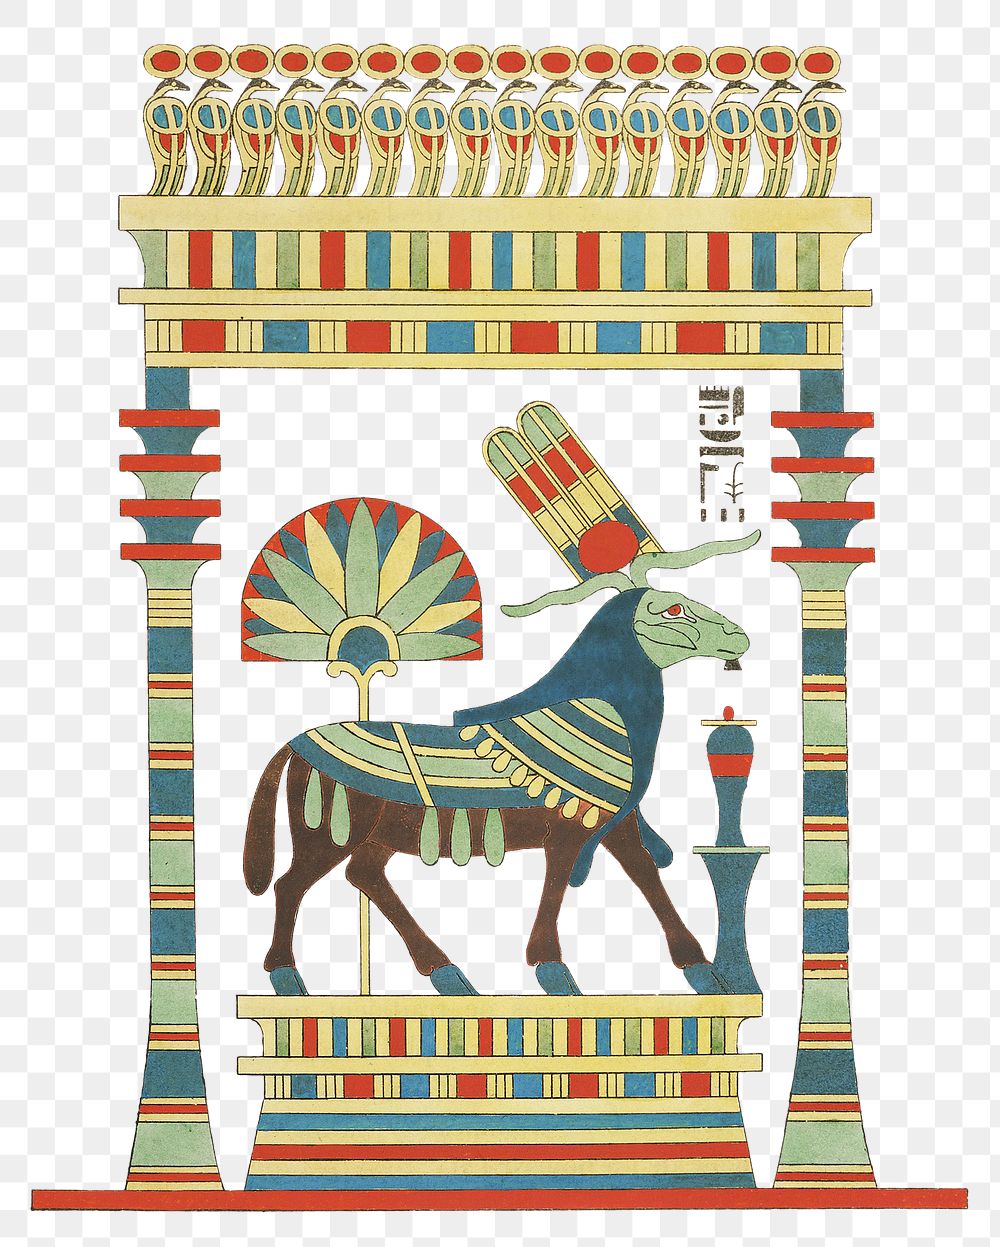 Amon, Amon-ra png Egyptian mythology, transparent background